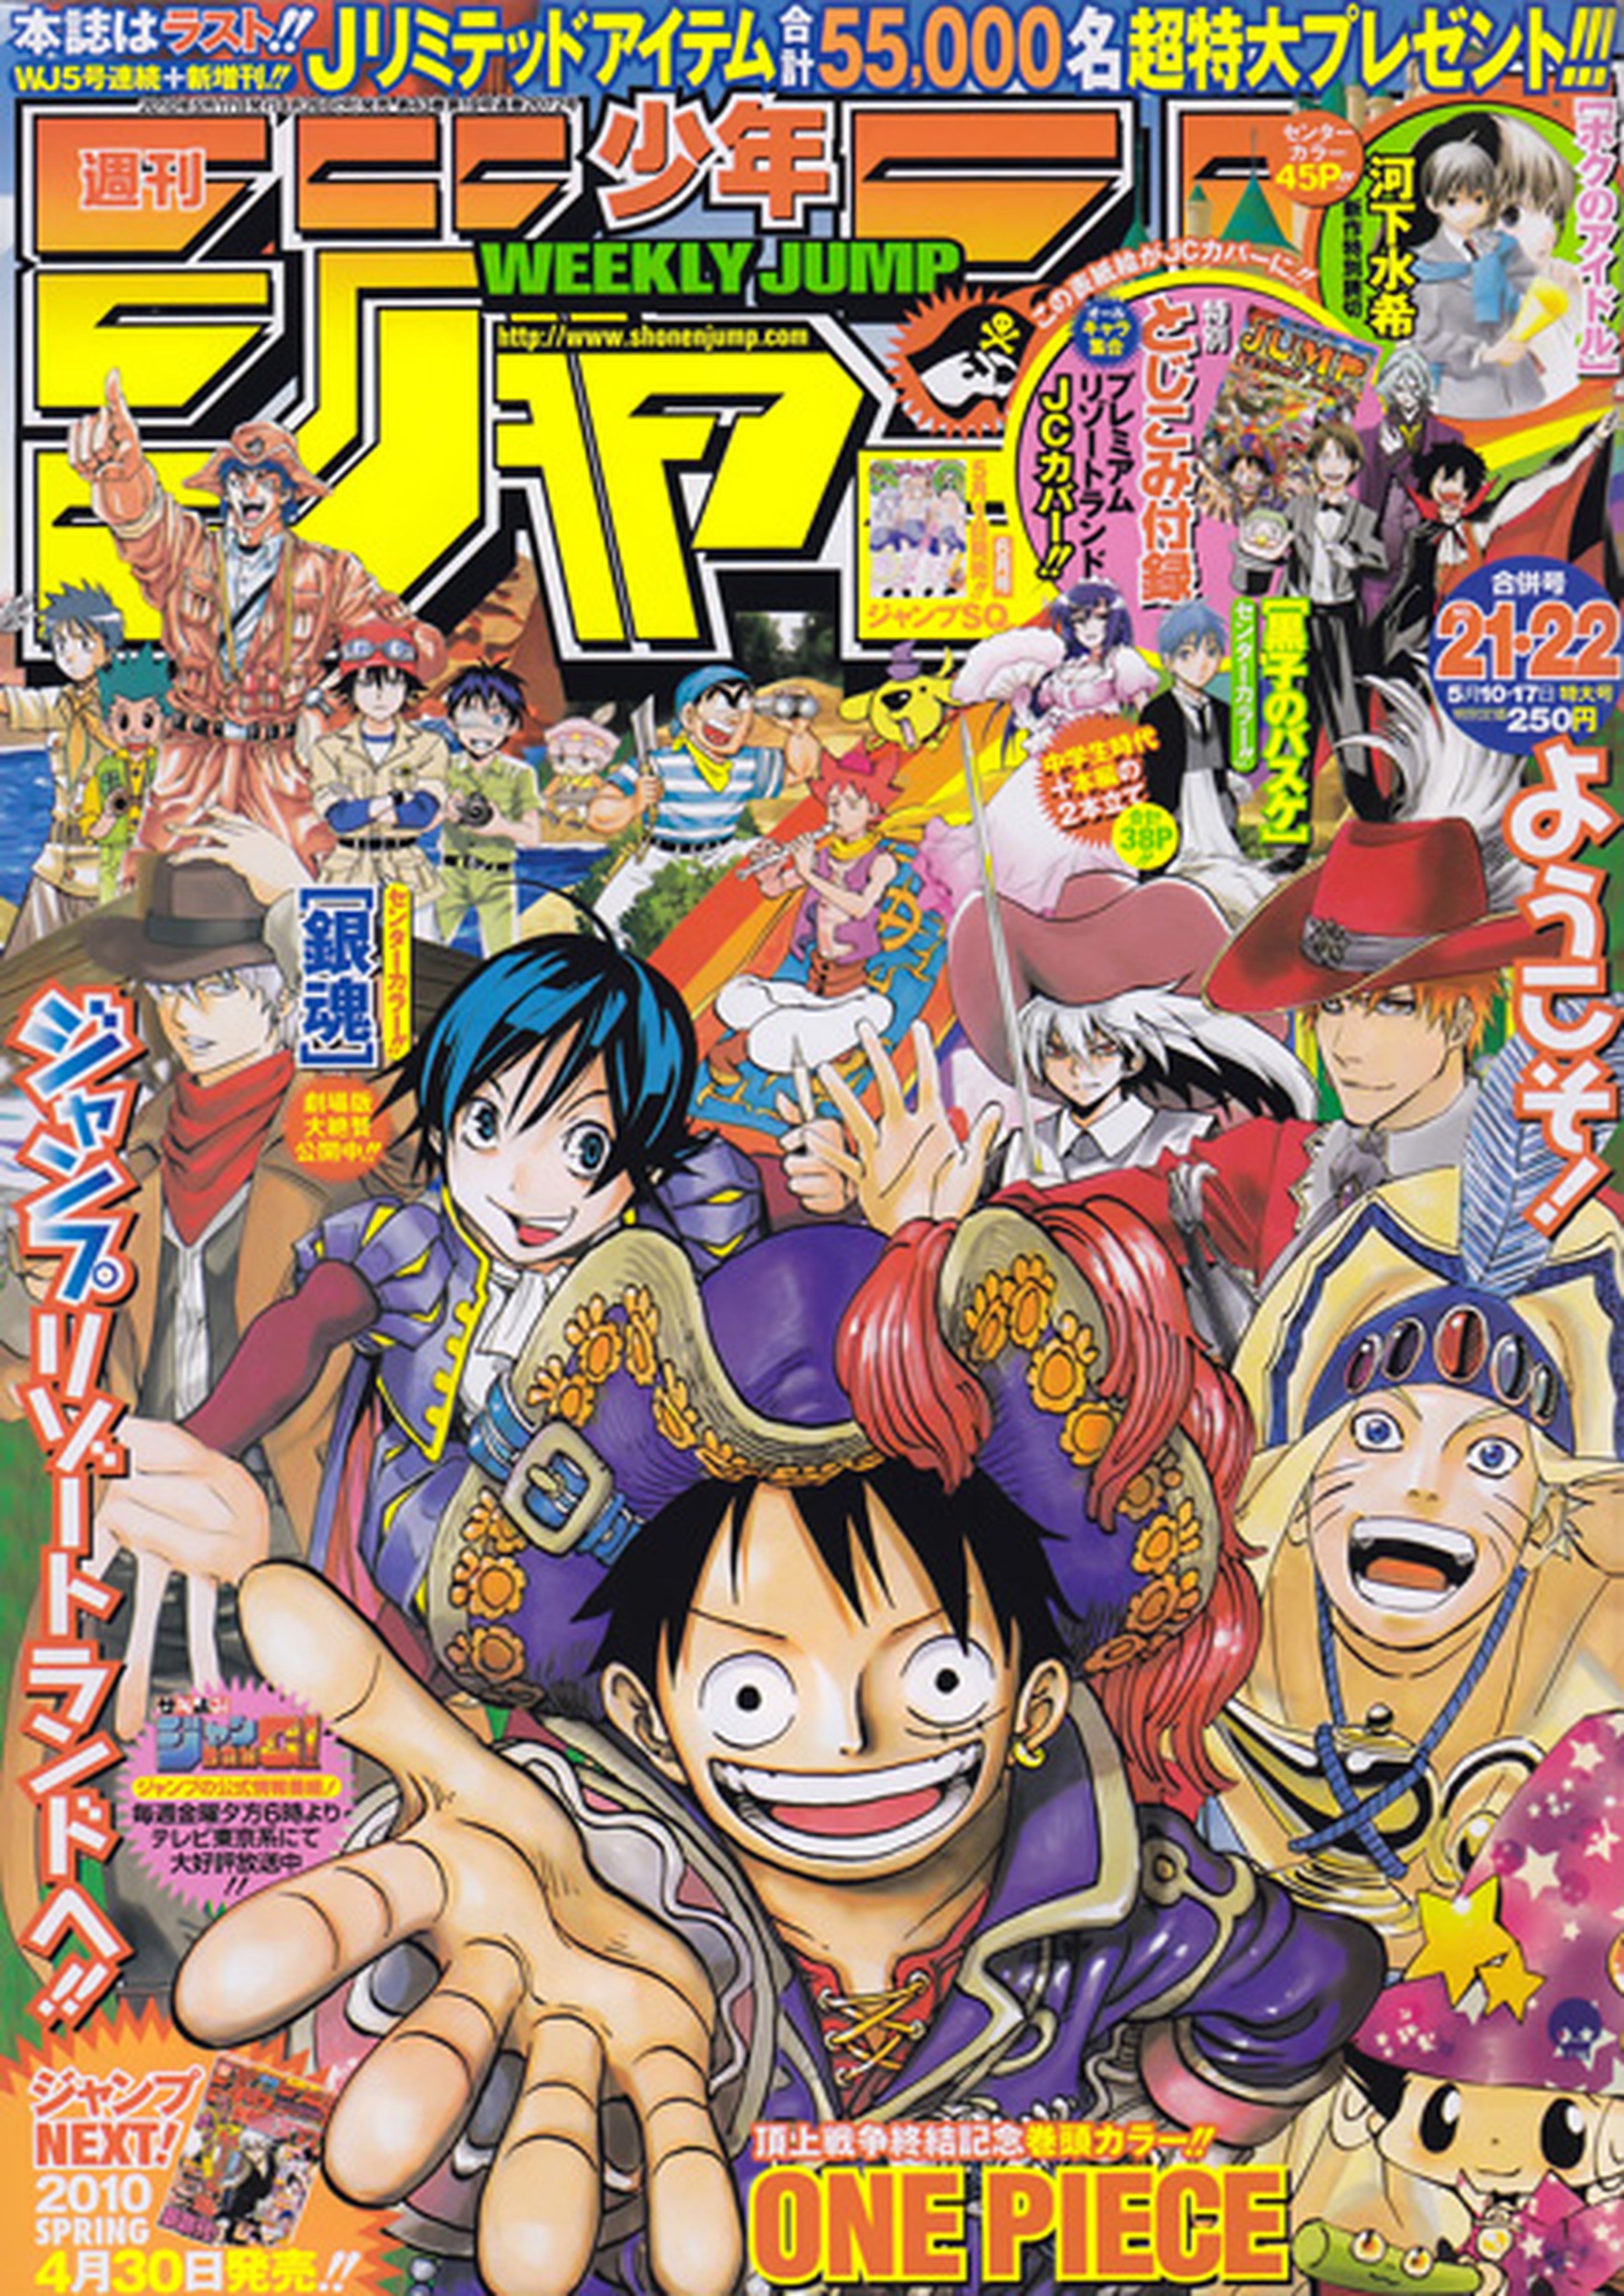 La revista Weekly Shonen Jump puede lanzarse a nivel mundial